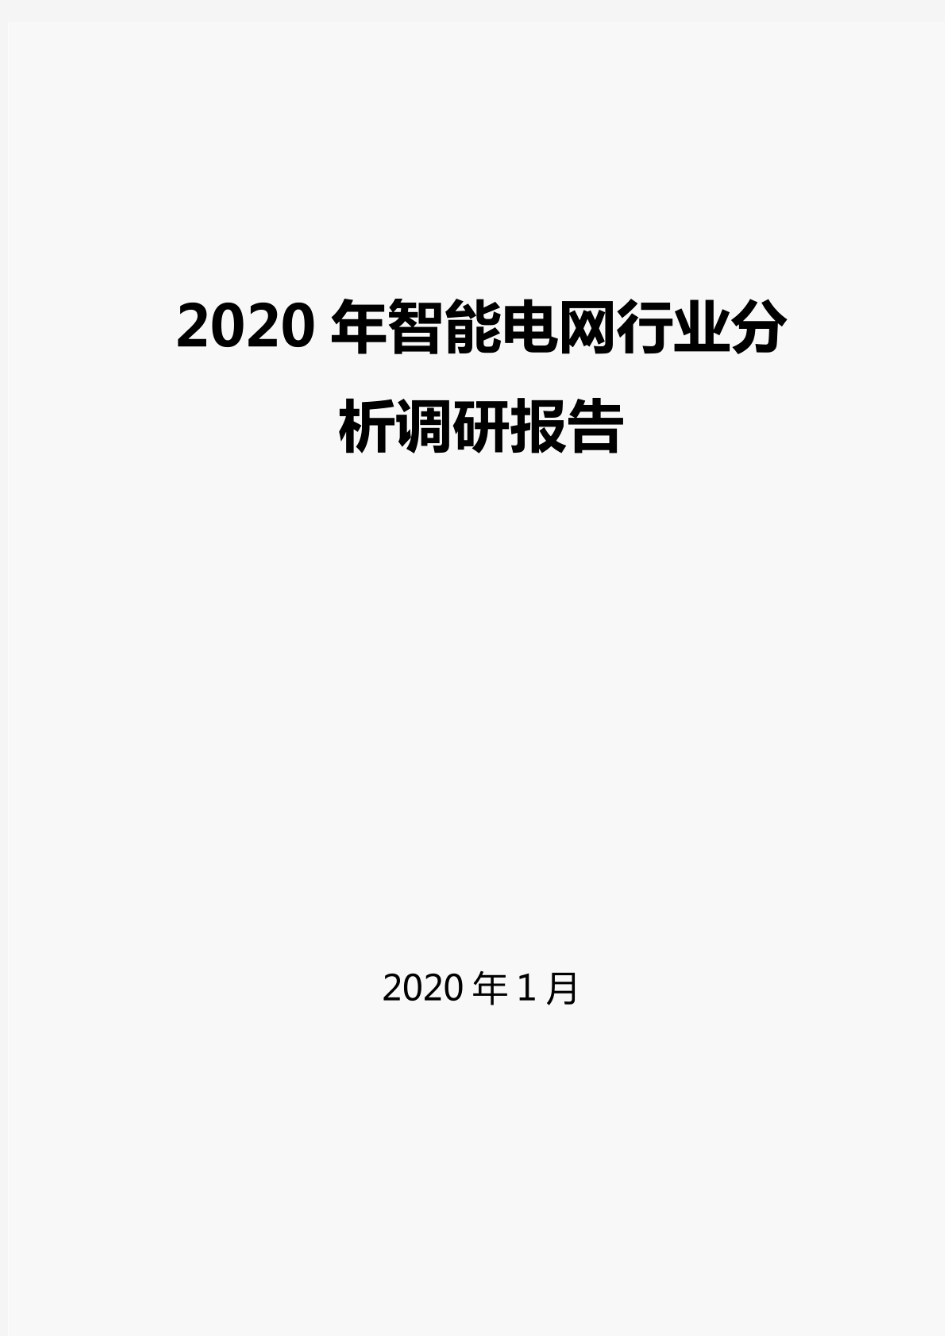 2020智能电网行业分析报告